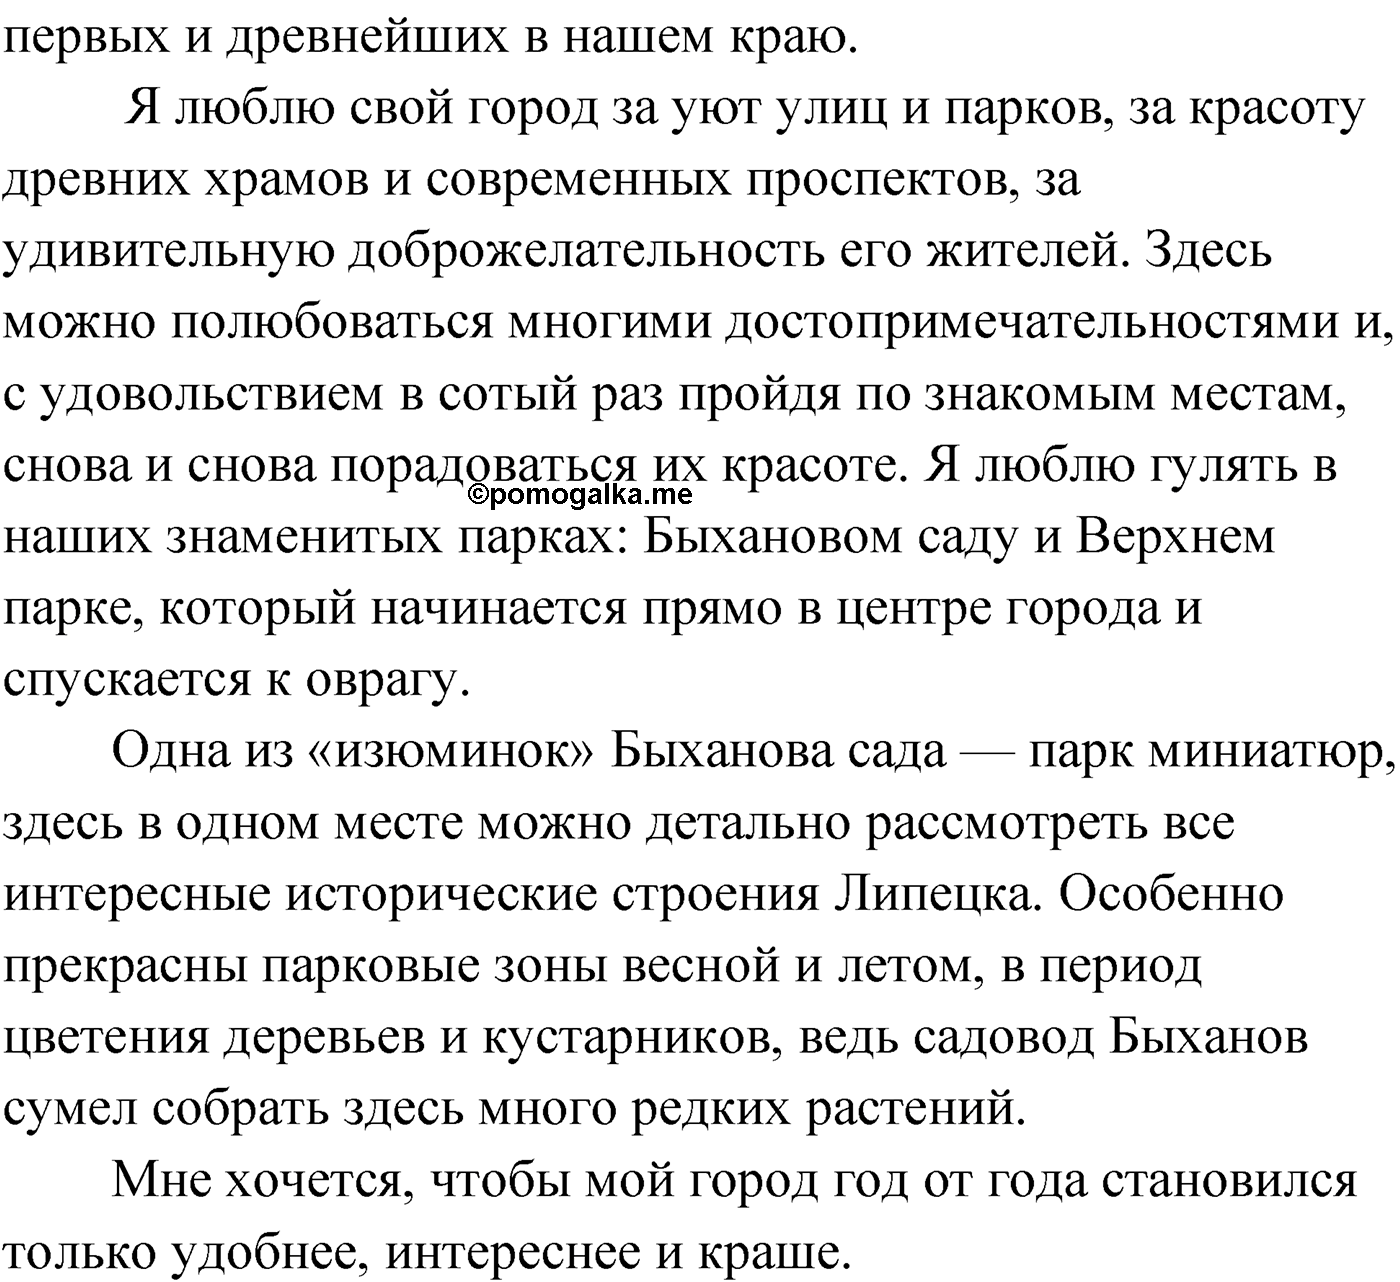 упражнение №190 русский язык 9 класс Мурина 2019 год